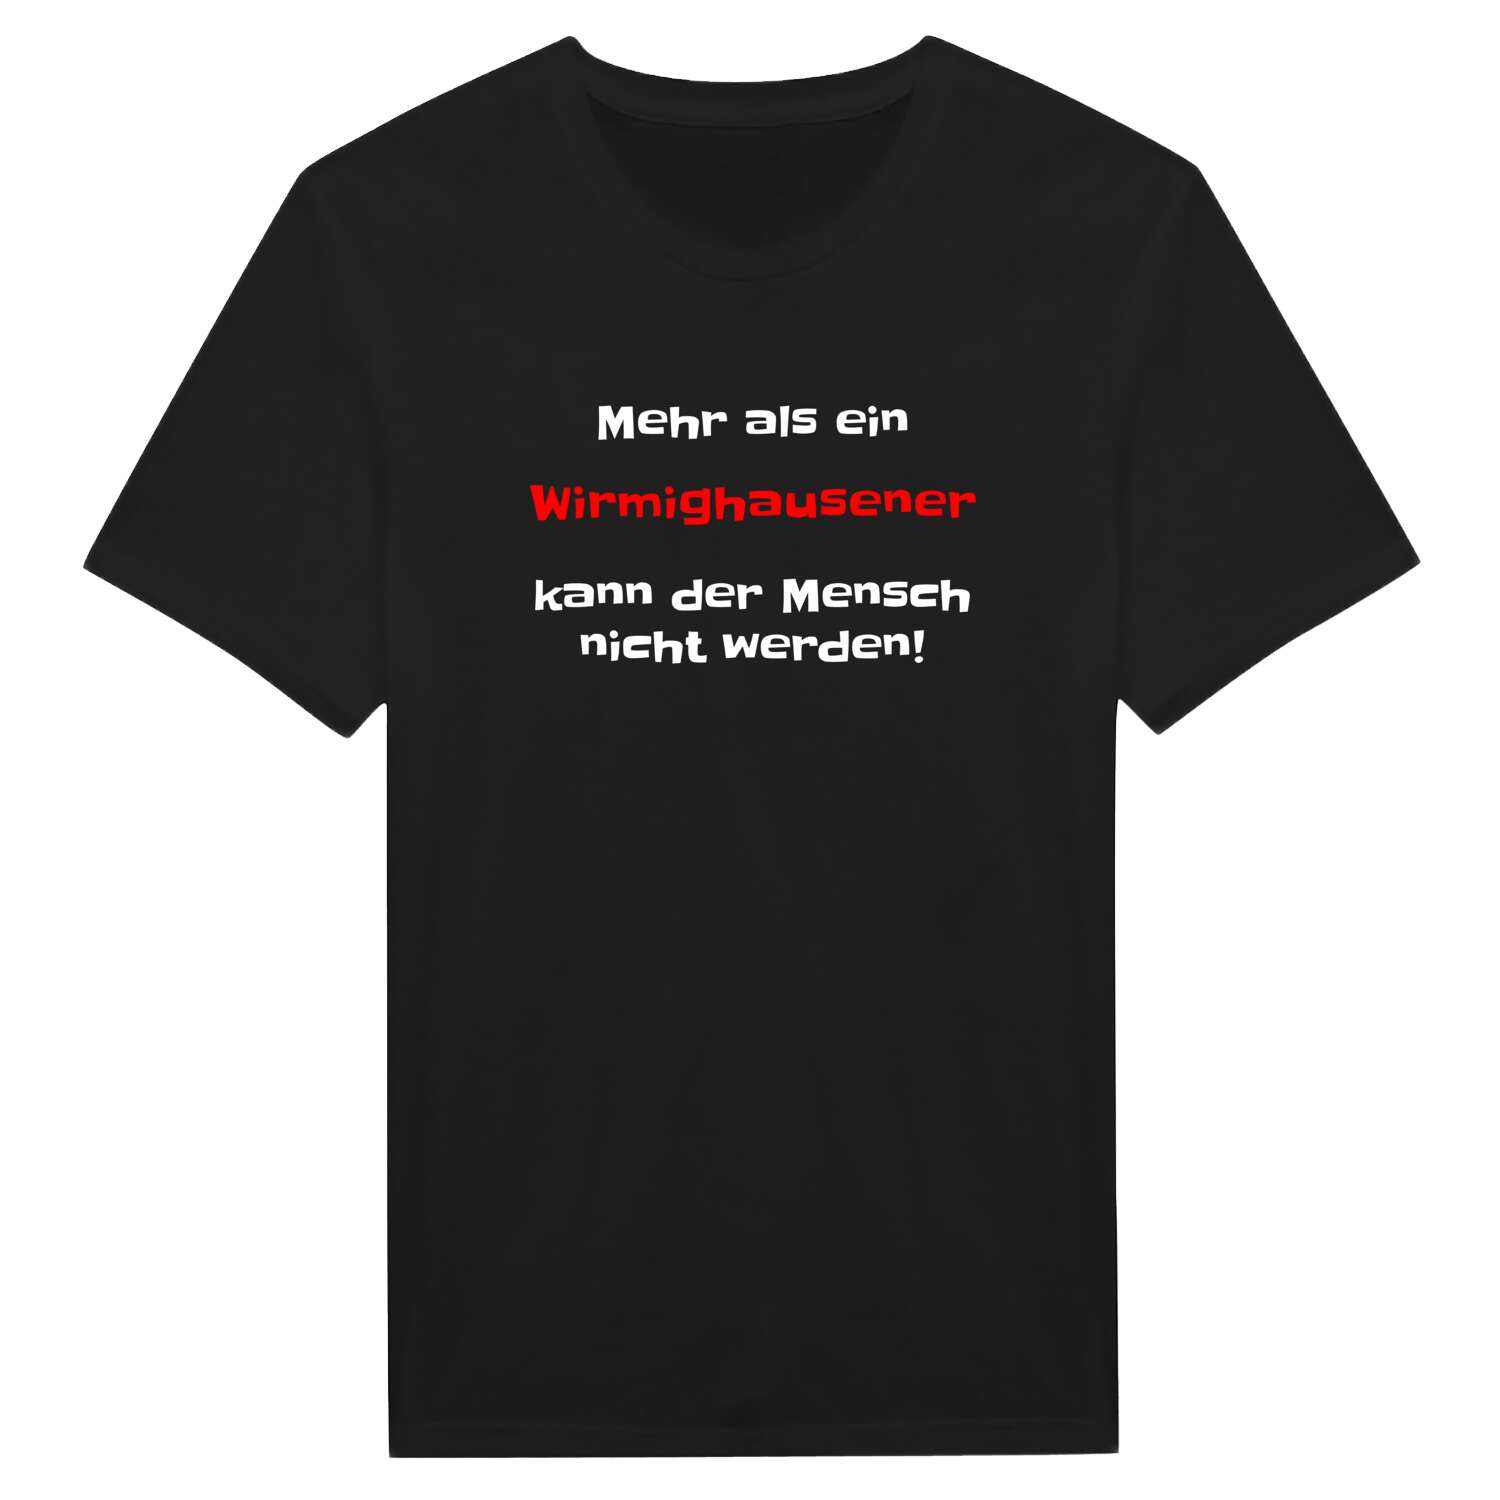 Wirmighausen T-Shirt »Mehr als ein«